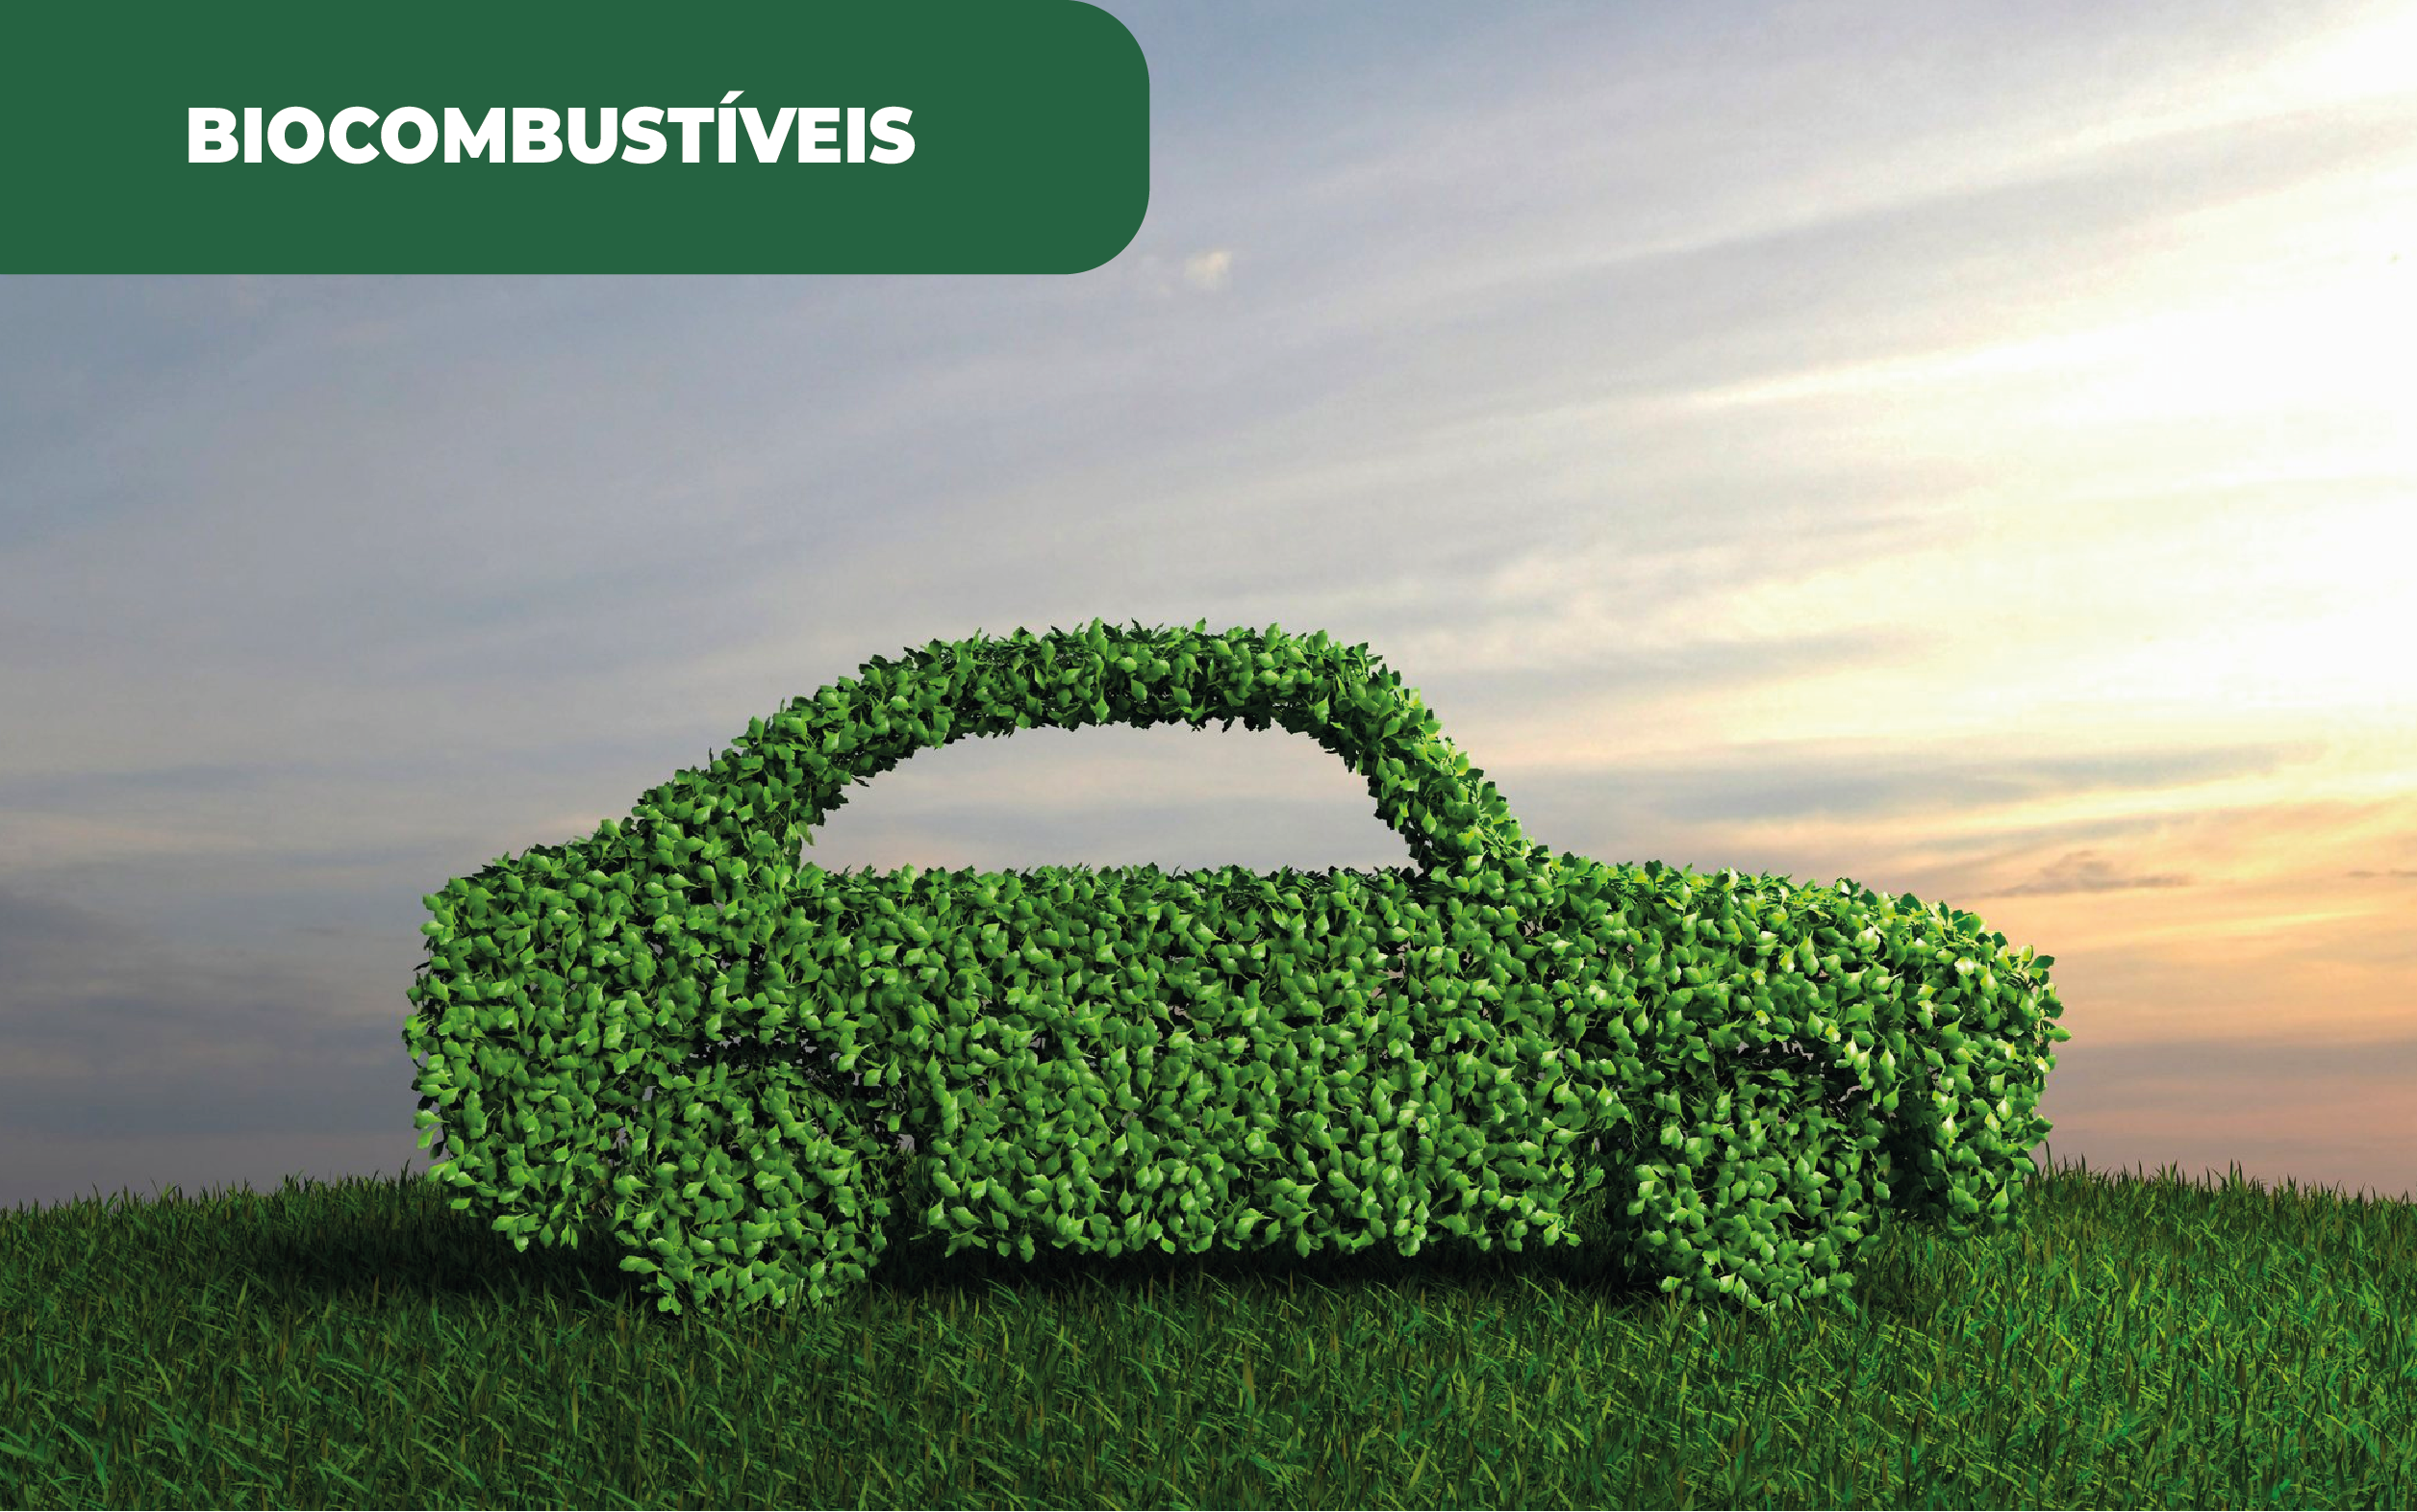 Imagem ilustrativa de um automóvel "feito" de folhas, aludindo aos biocombustíveis, e à presença do Ecodiesel da PRIO em 60 postos portugueses